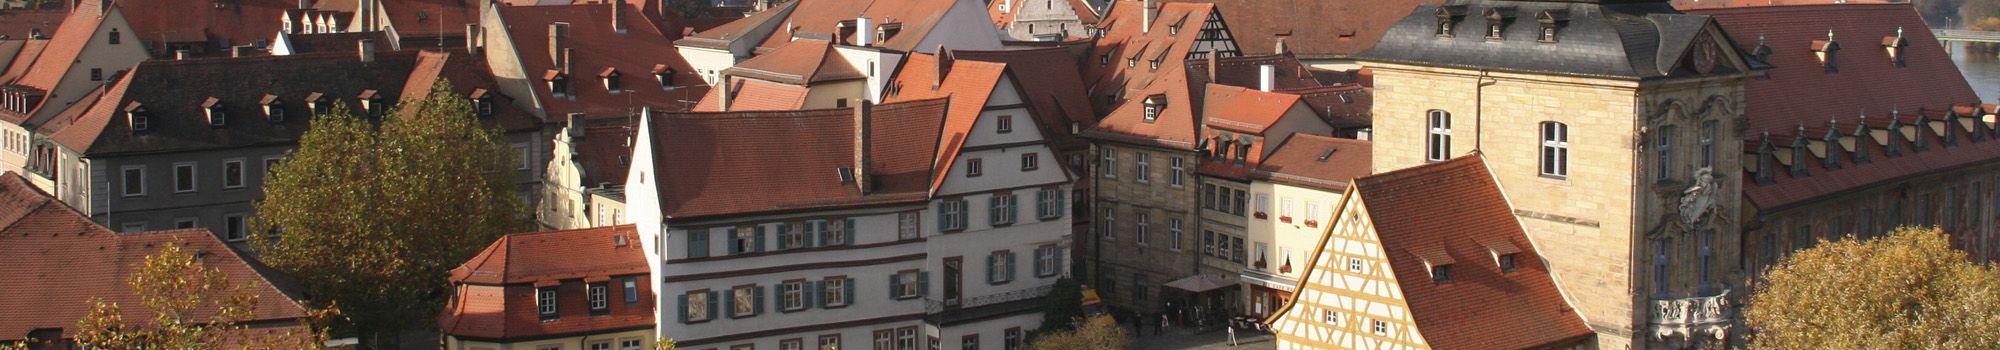 Referenzbericht Stadt Bamberg